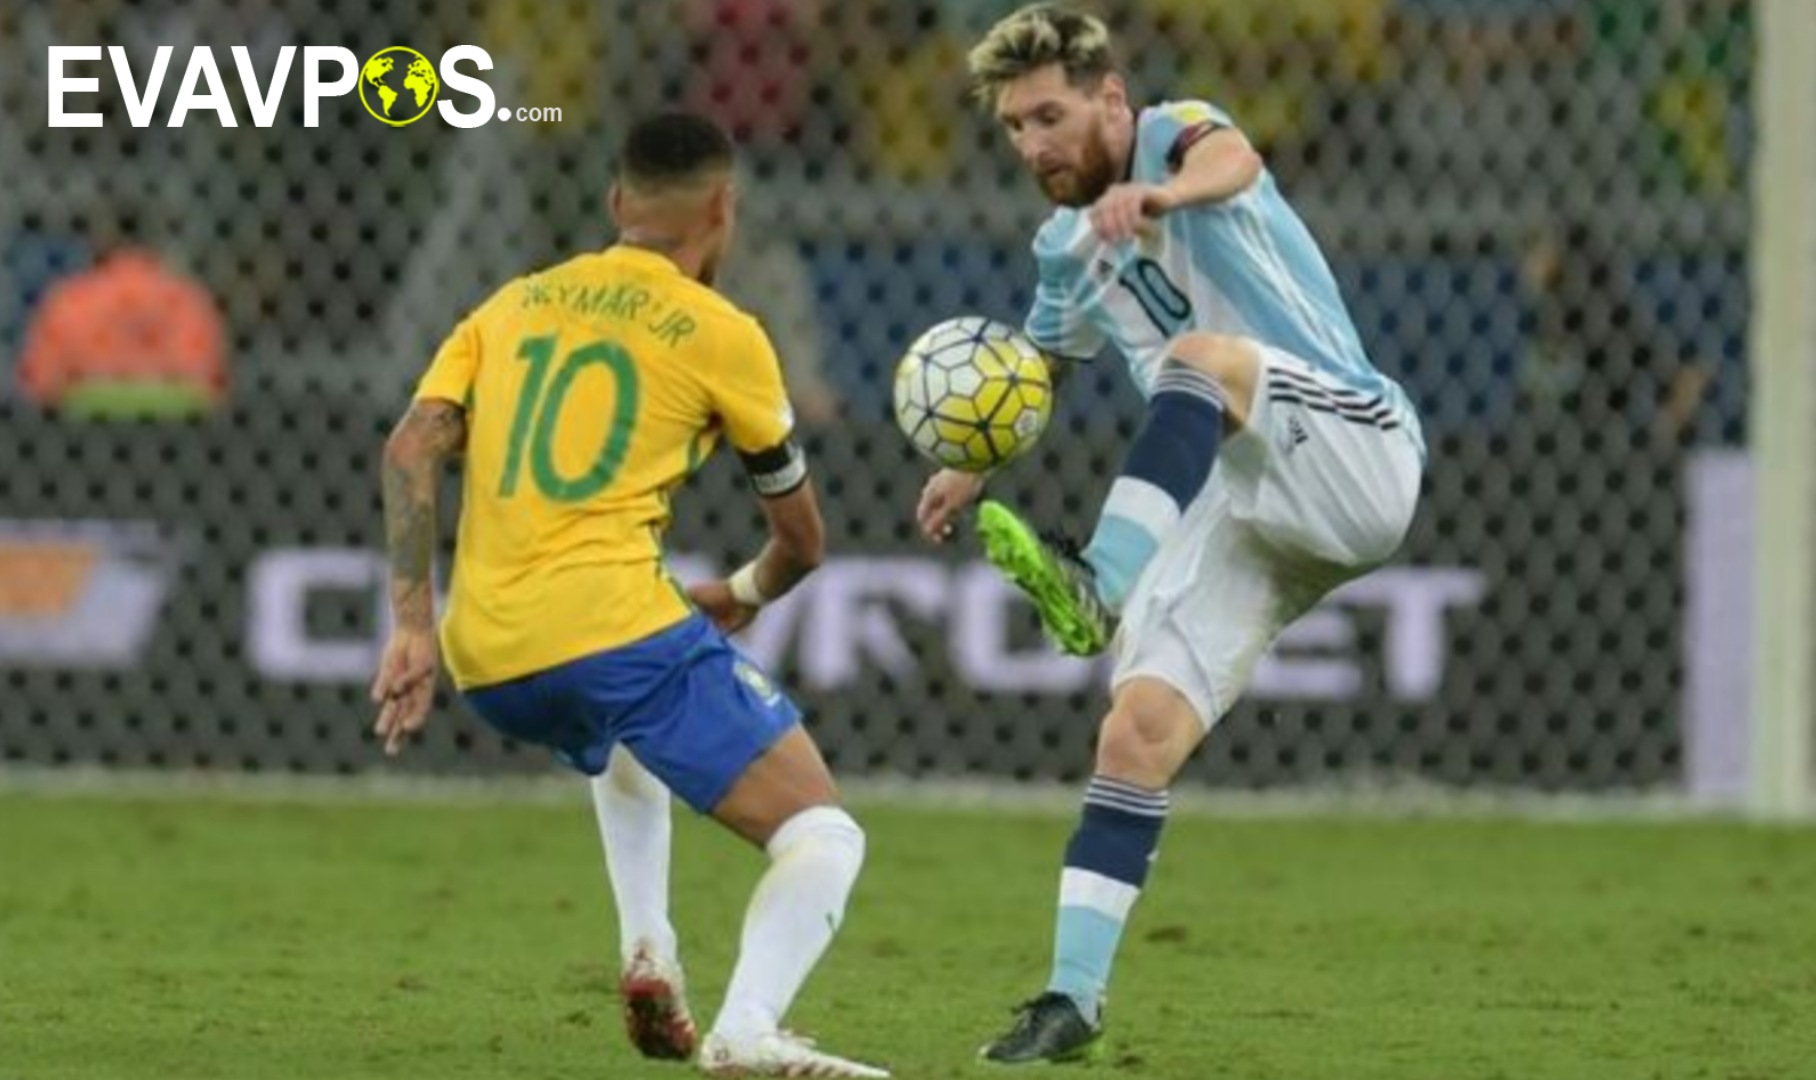 Skor brasil vs argentina copa america 2021